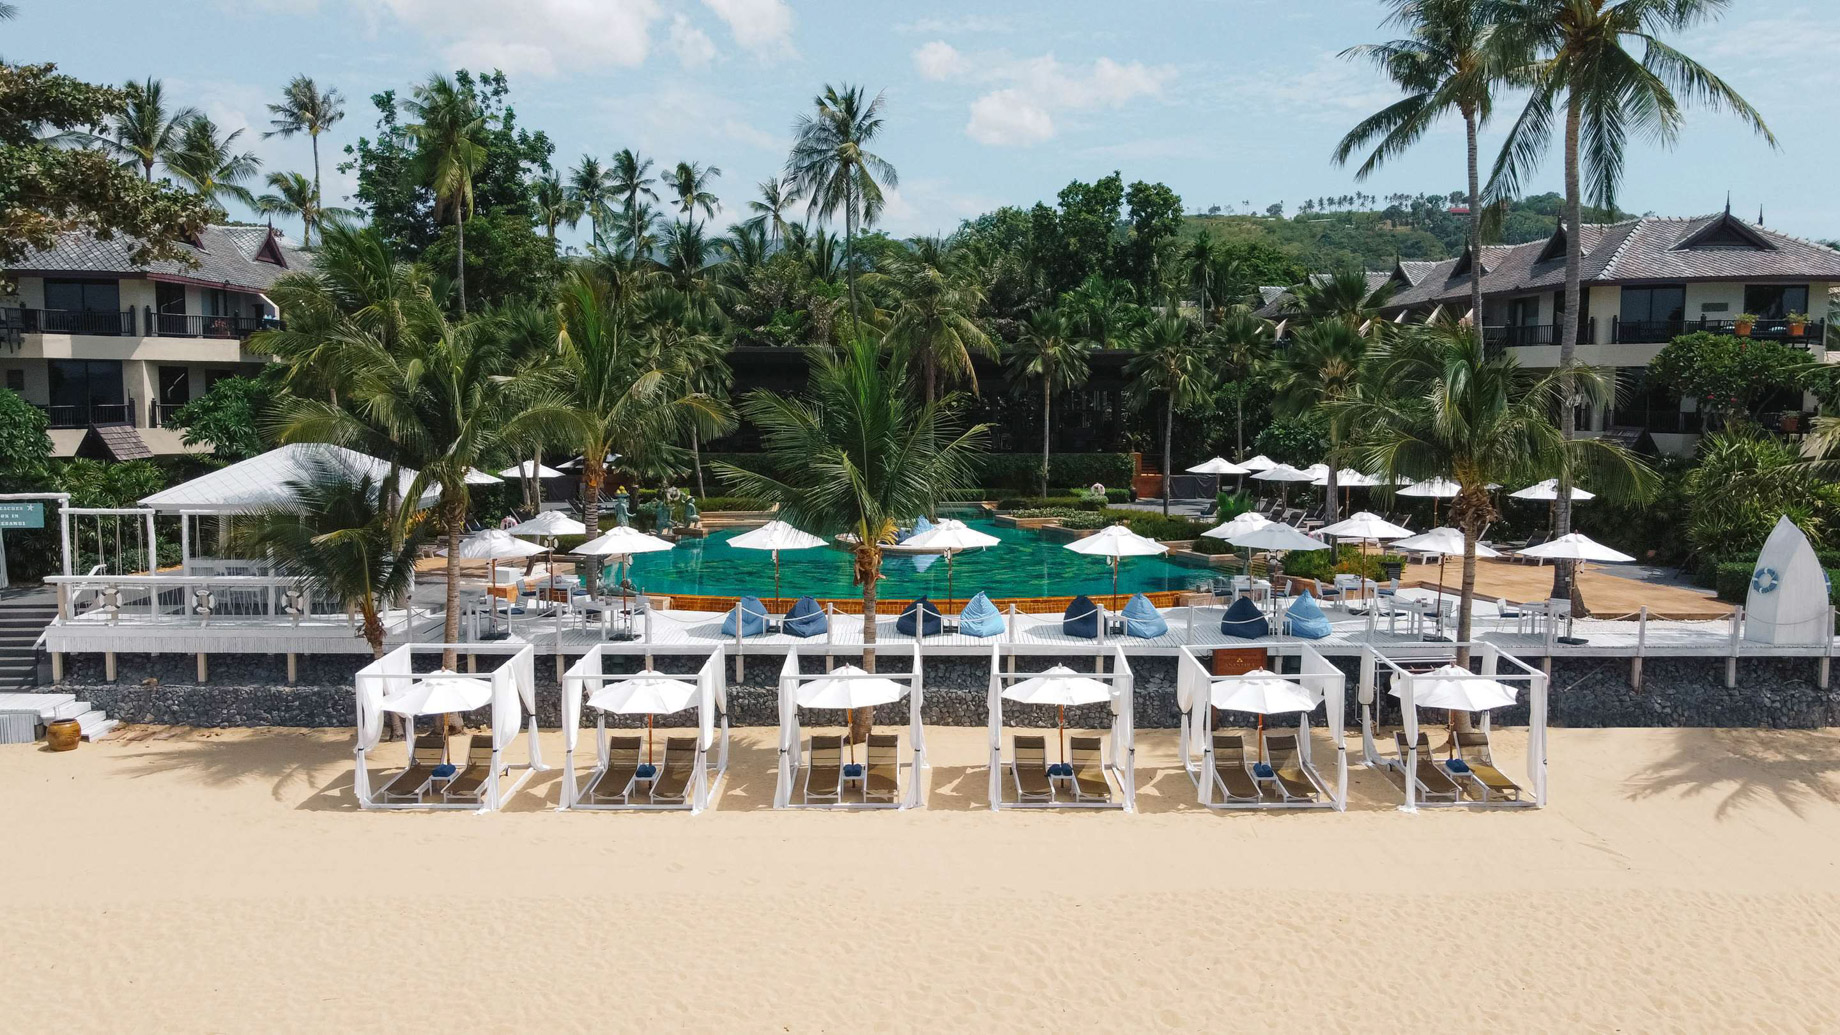 Anantara Bophut Koh Samui Resort – Thailand – Beach Pool View